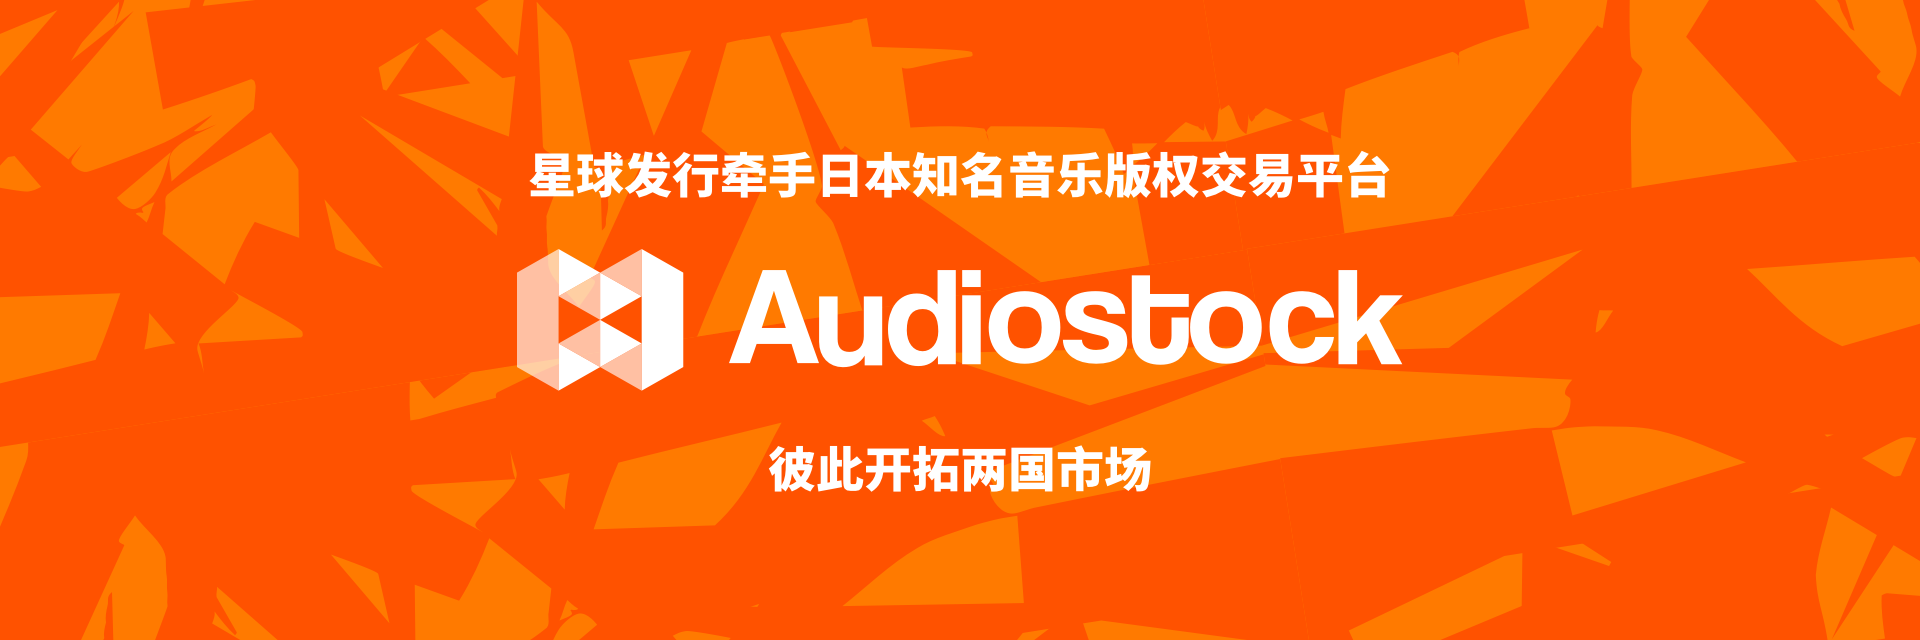 星发大事件 | 牵手日本知名音乐版权交易平台 Audiostock，彼此开拓两国市场